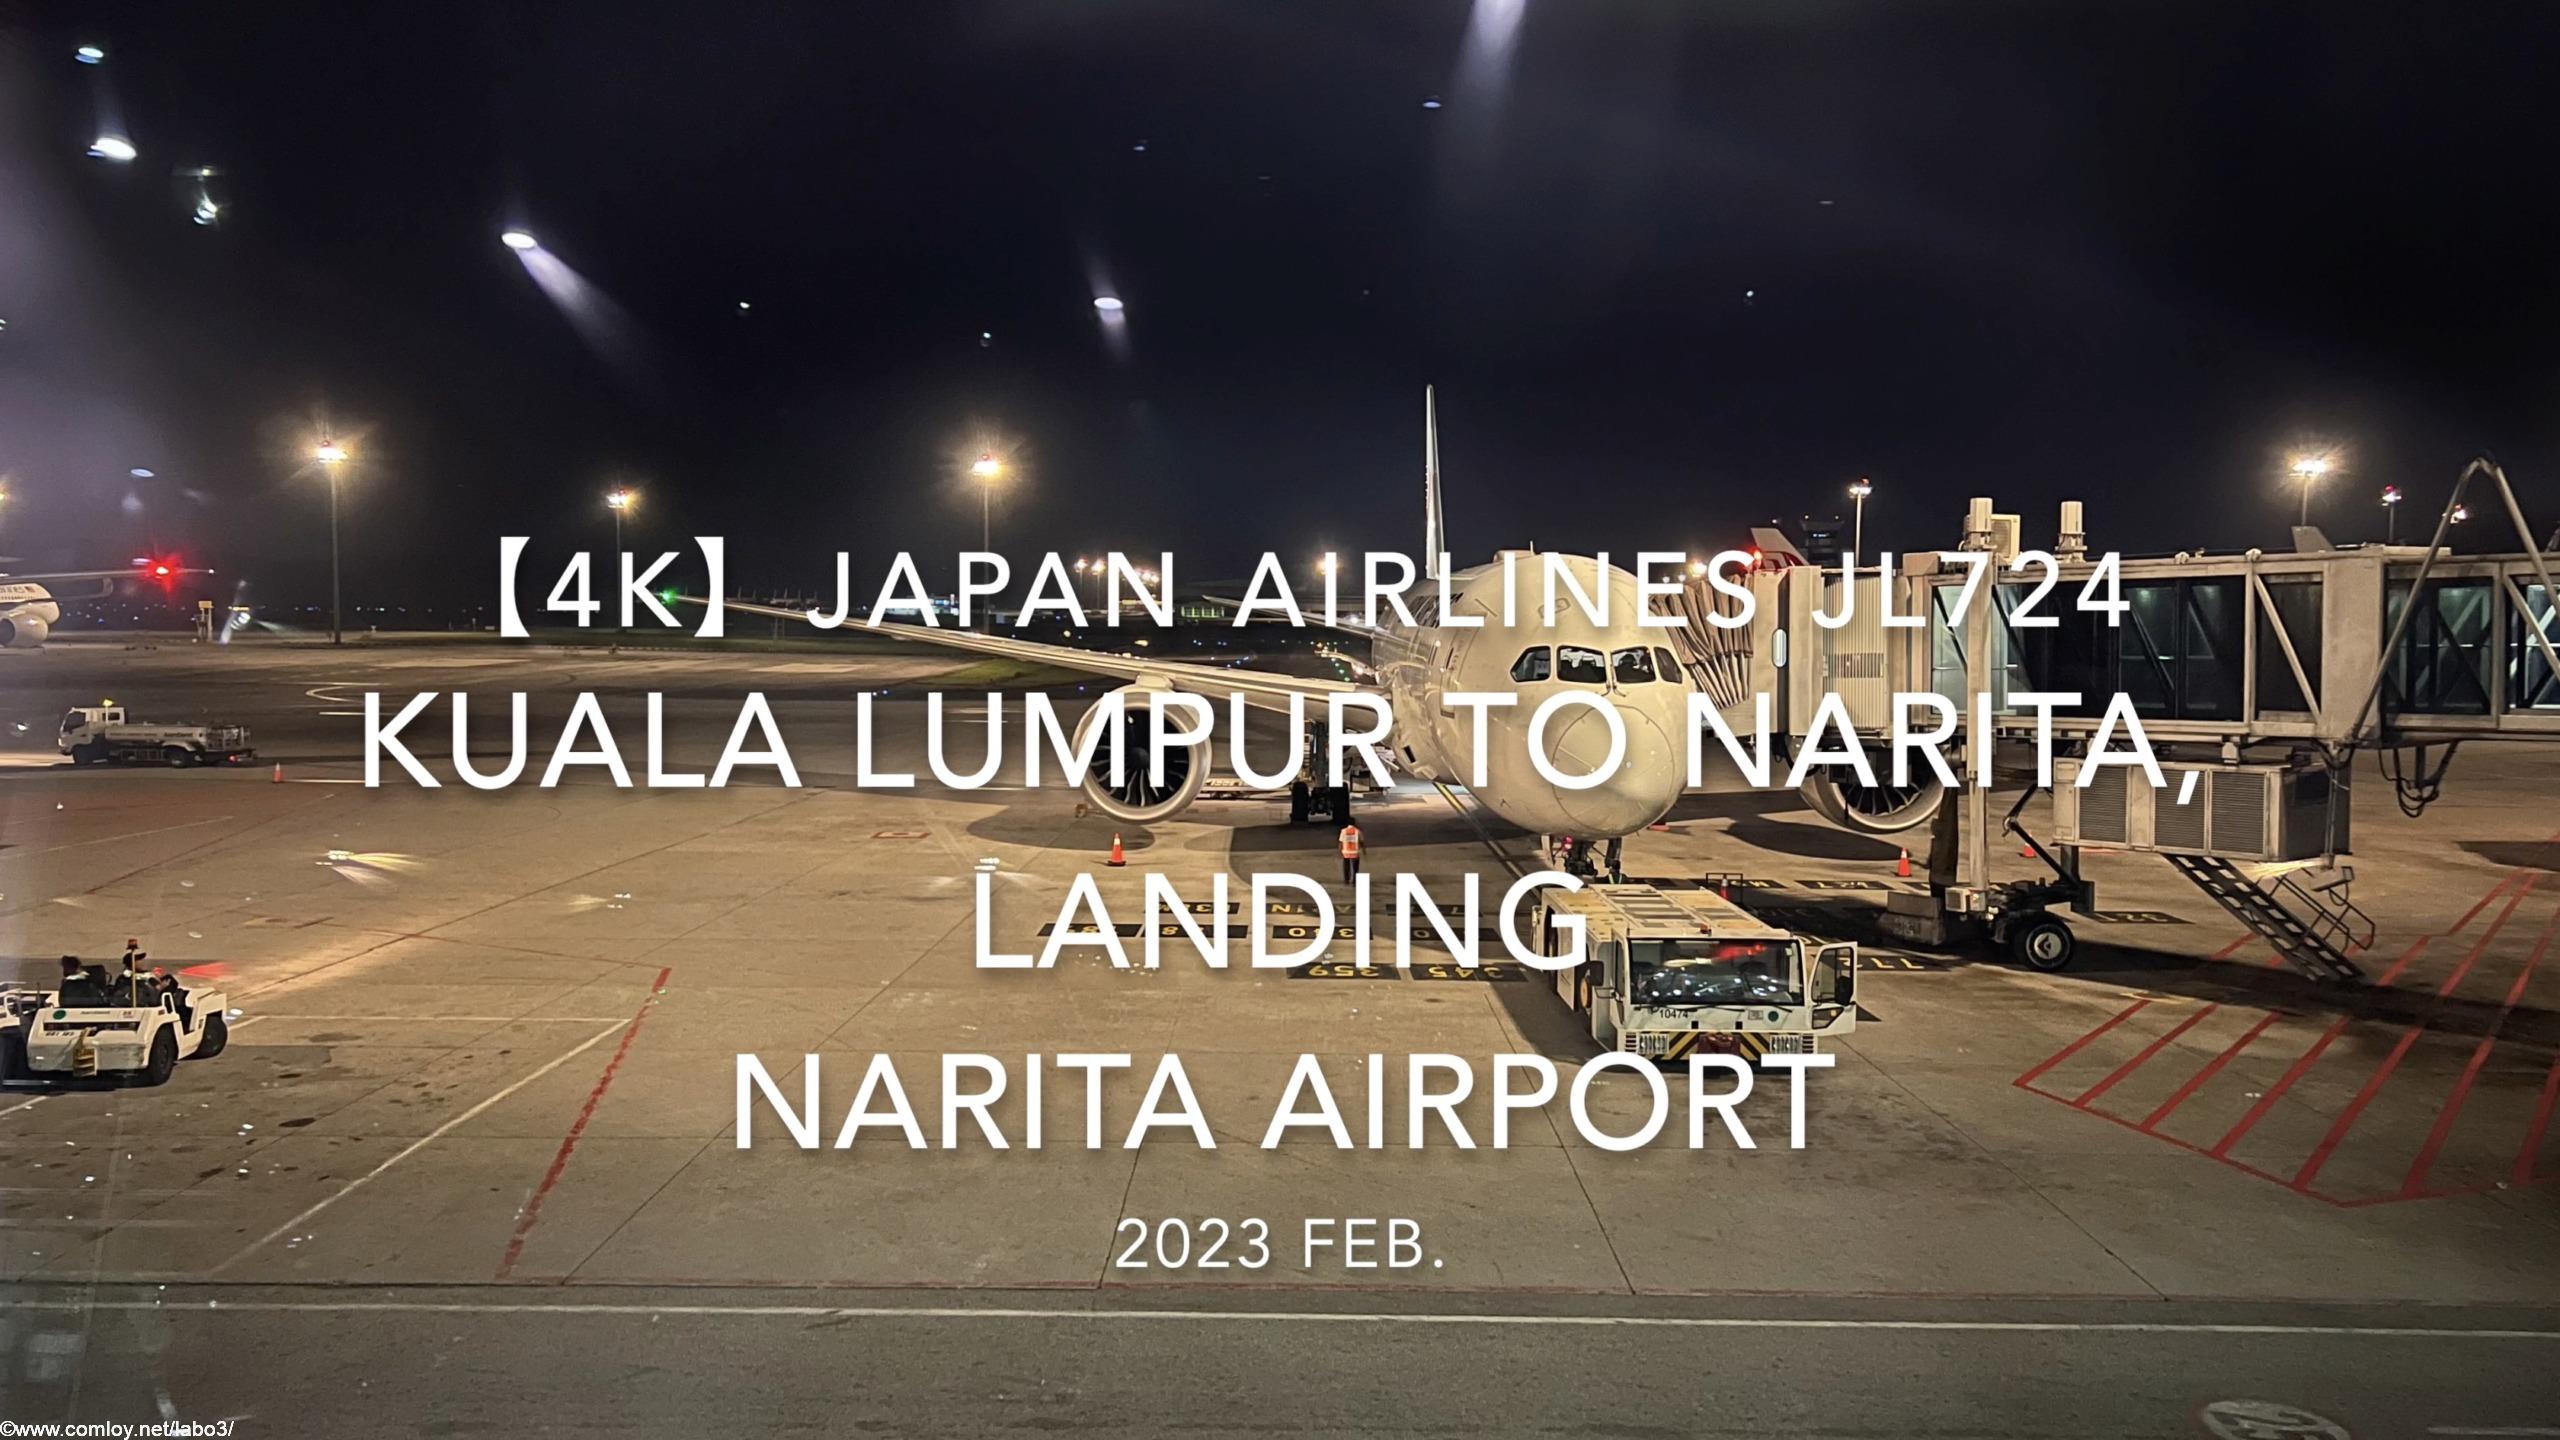 【機内から離着陸映像 4K】2023 Feb. JAPAN AIRLINES JL724 Kuala Lumpur to NARITA,Landing NARITA Airport 日本航空 クアラルンプール - 成田 成田空港着陸